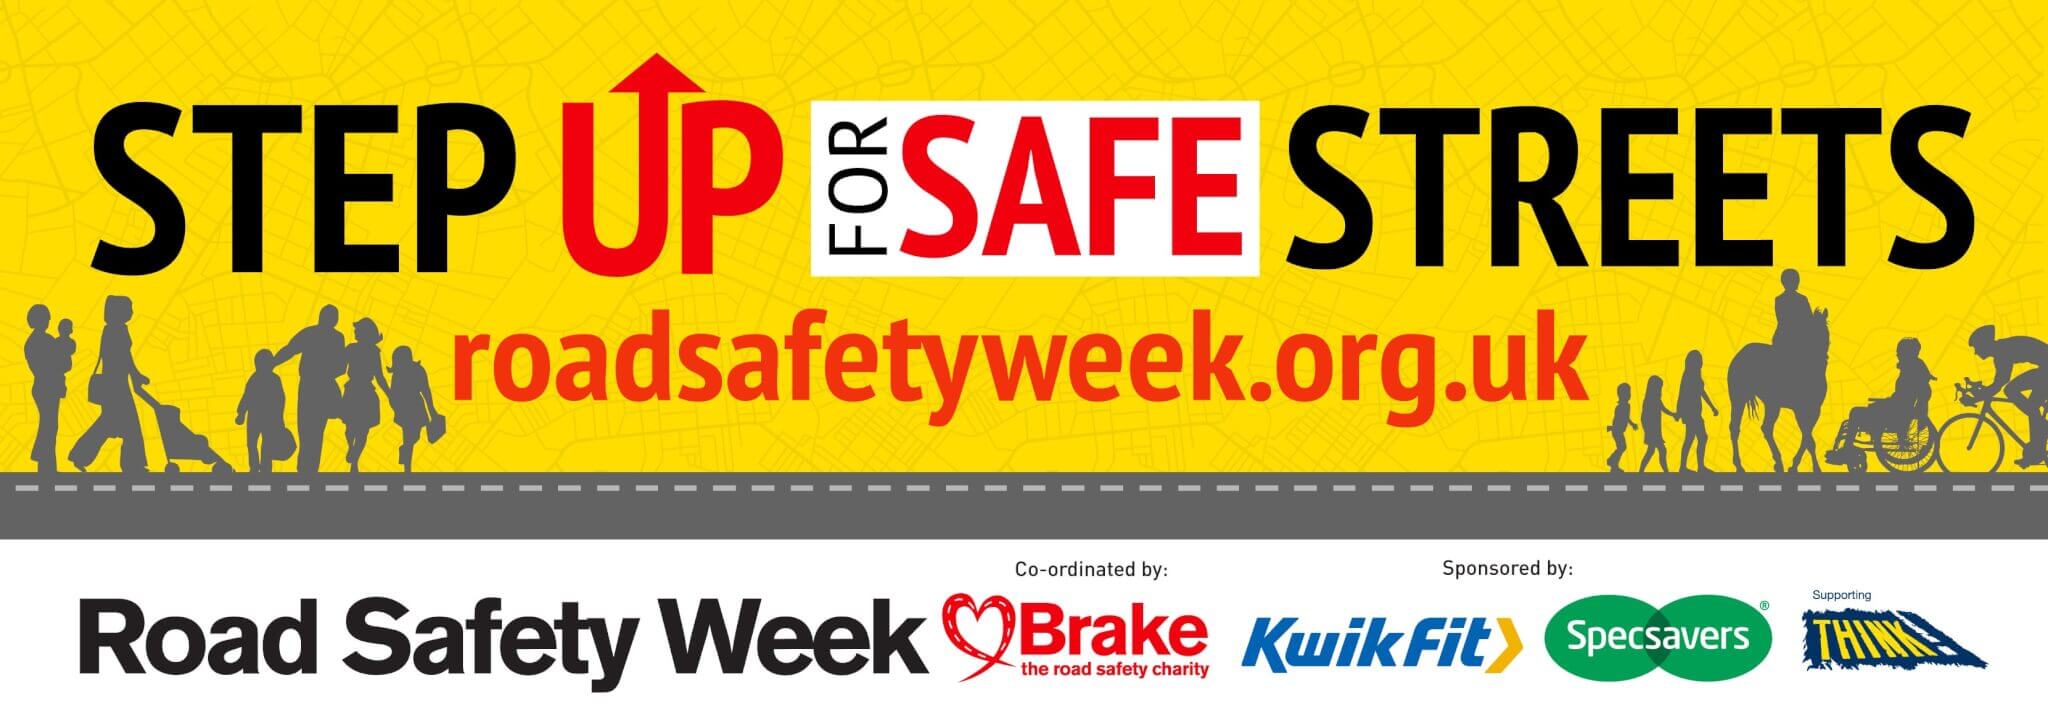 Set up for safe streets - road safety week logo